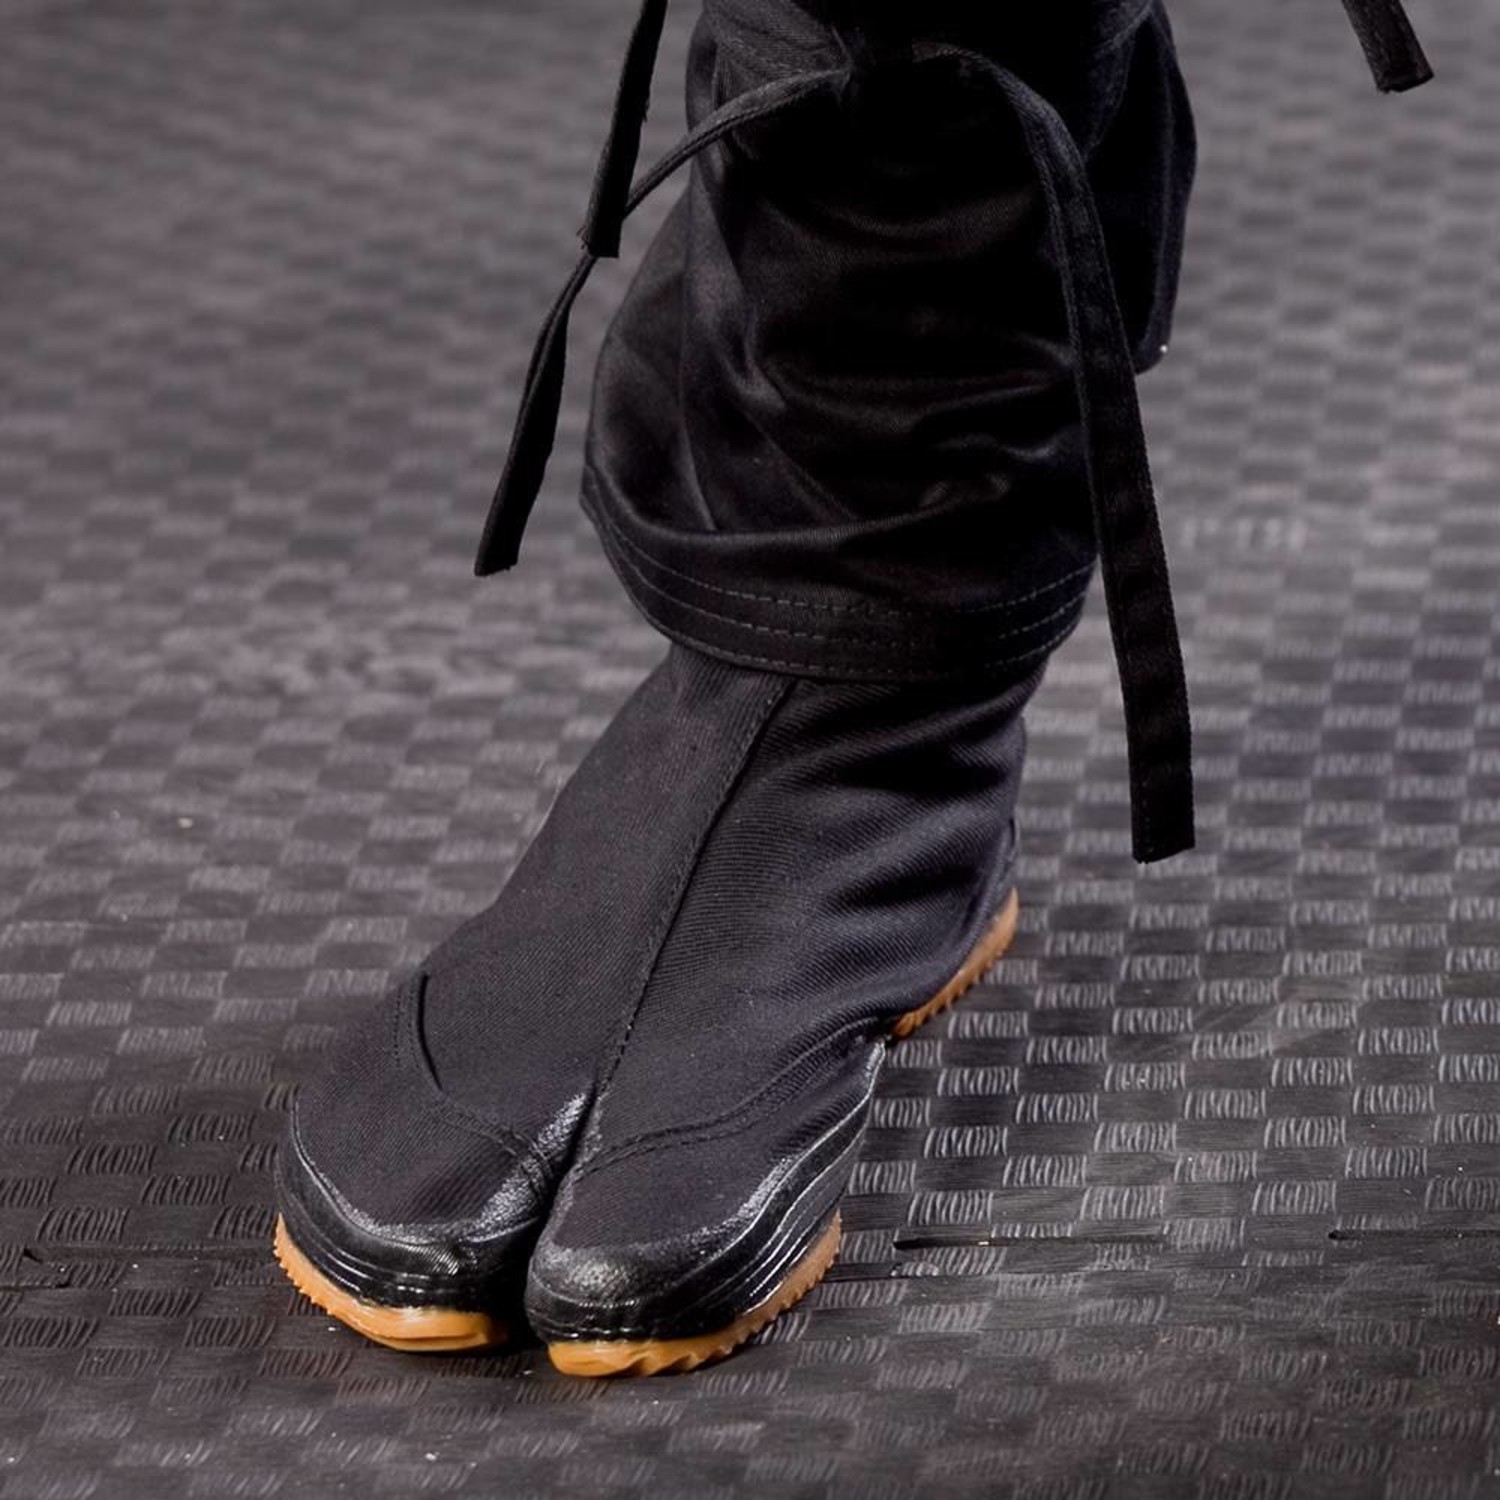 Ninja tabi boots